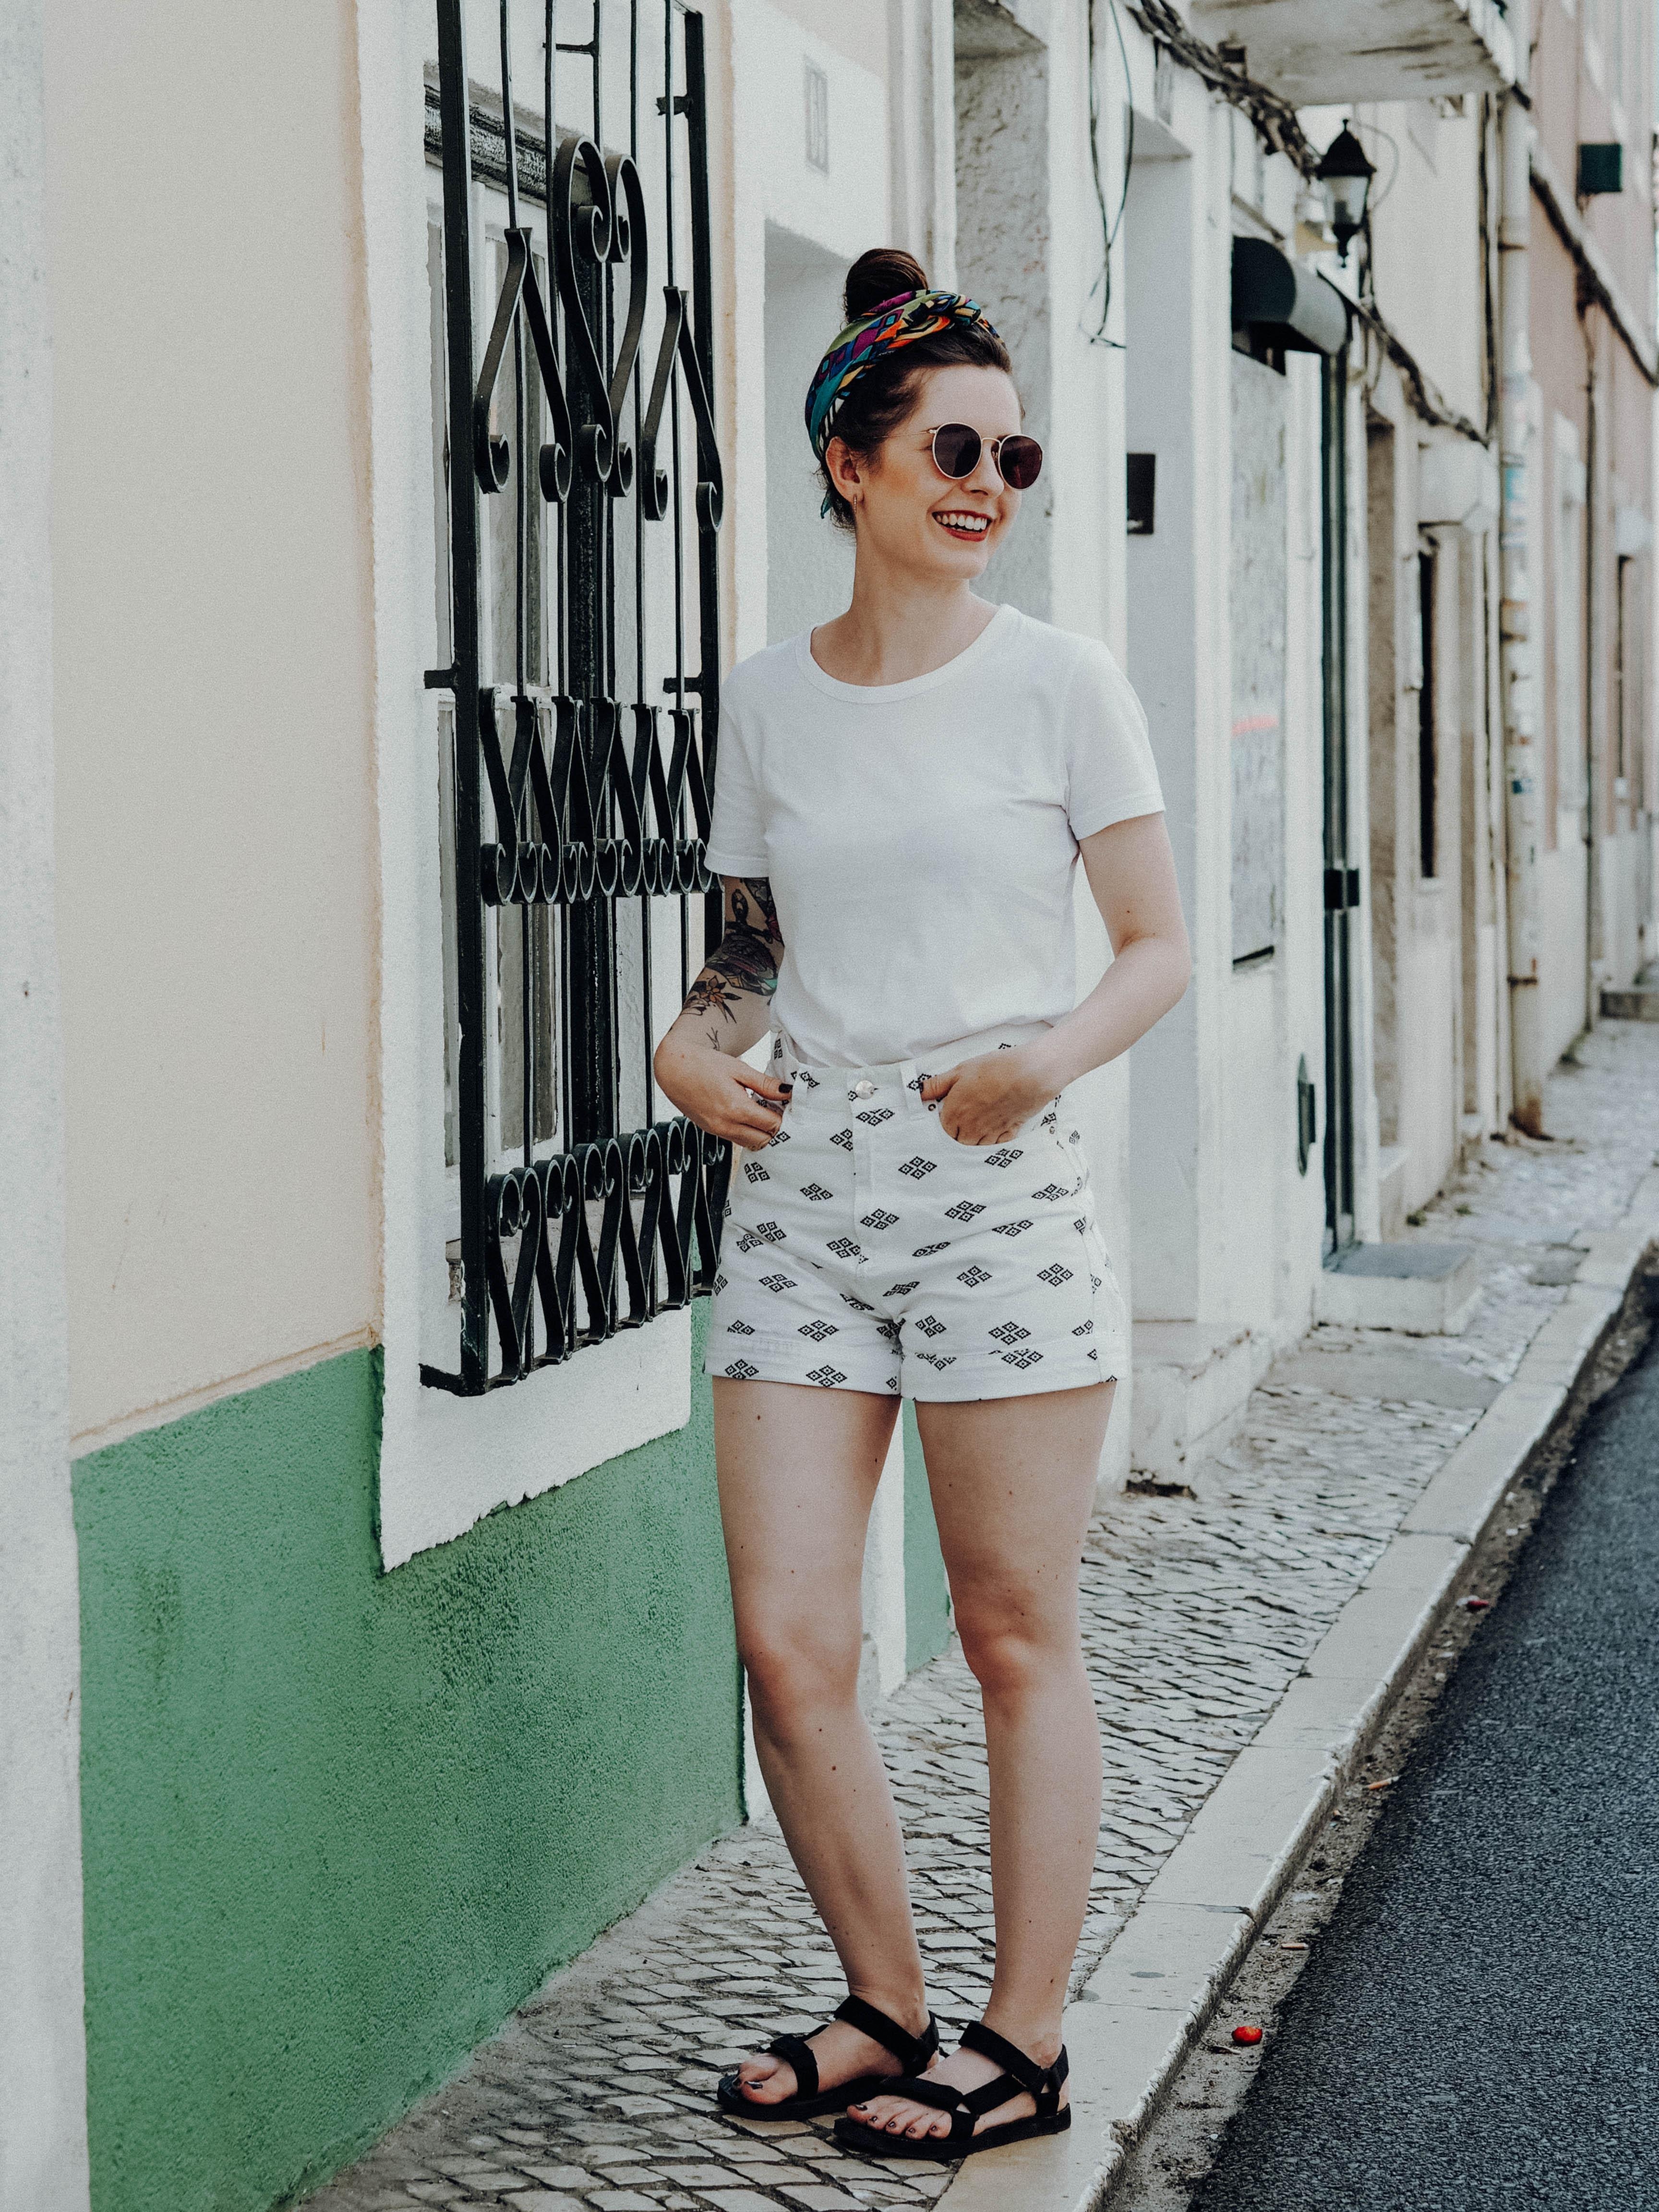 Mein liebster Urlaubslook: #allwhite plus #haarband ☀️ 
#lissabon #travel #fashion #outfit #shorts #weißestshirt